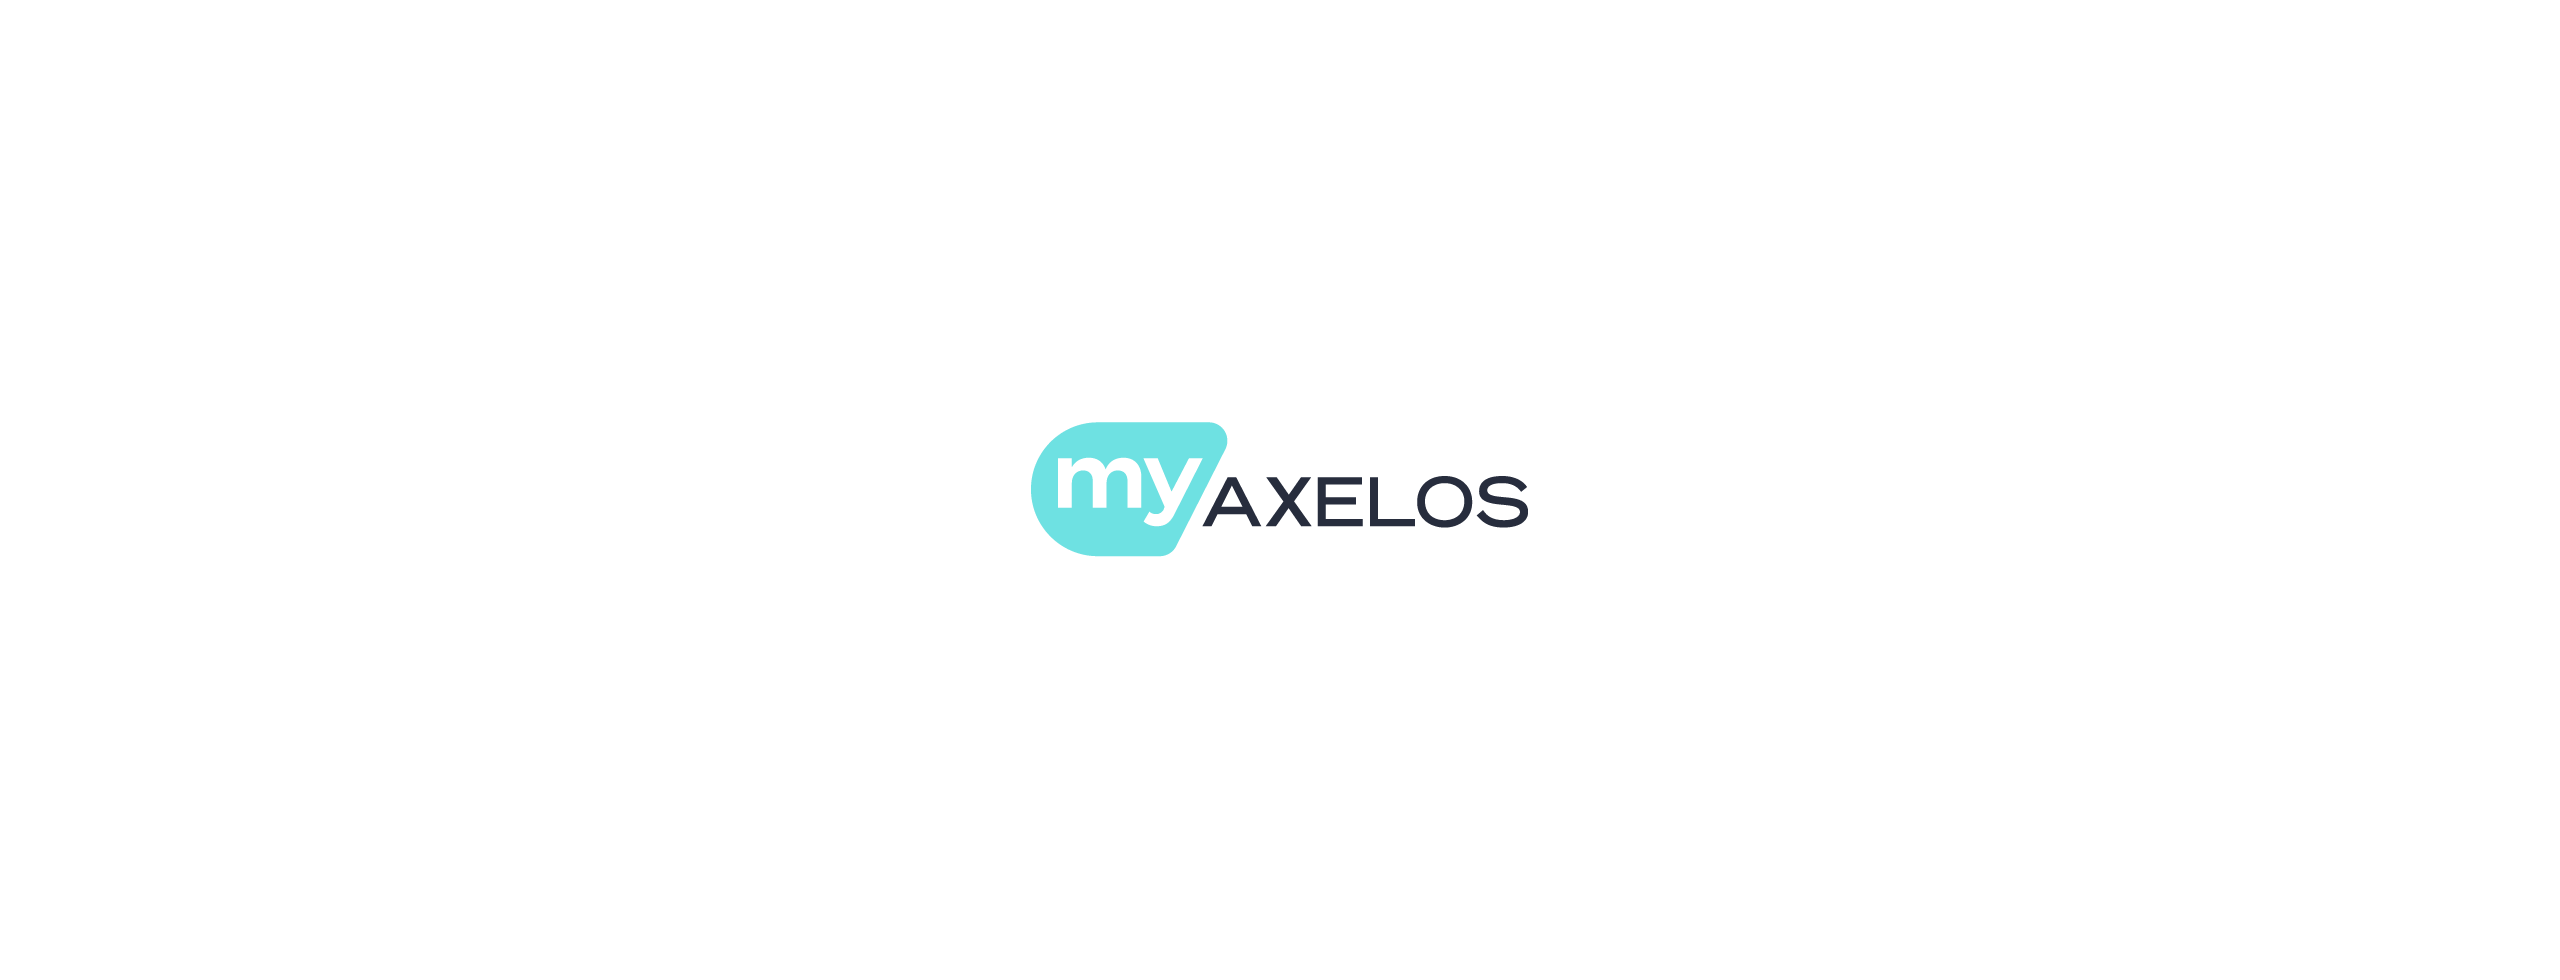 MyAxelos_logo